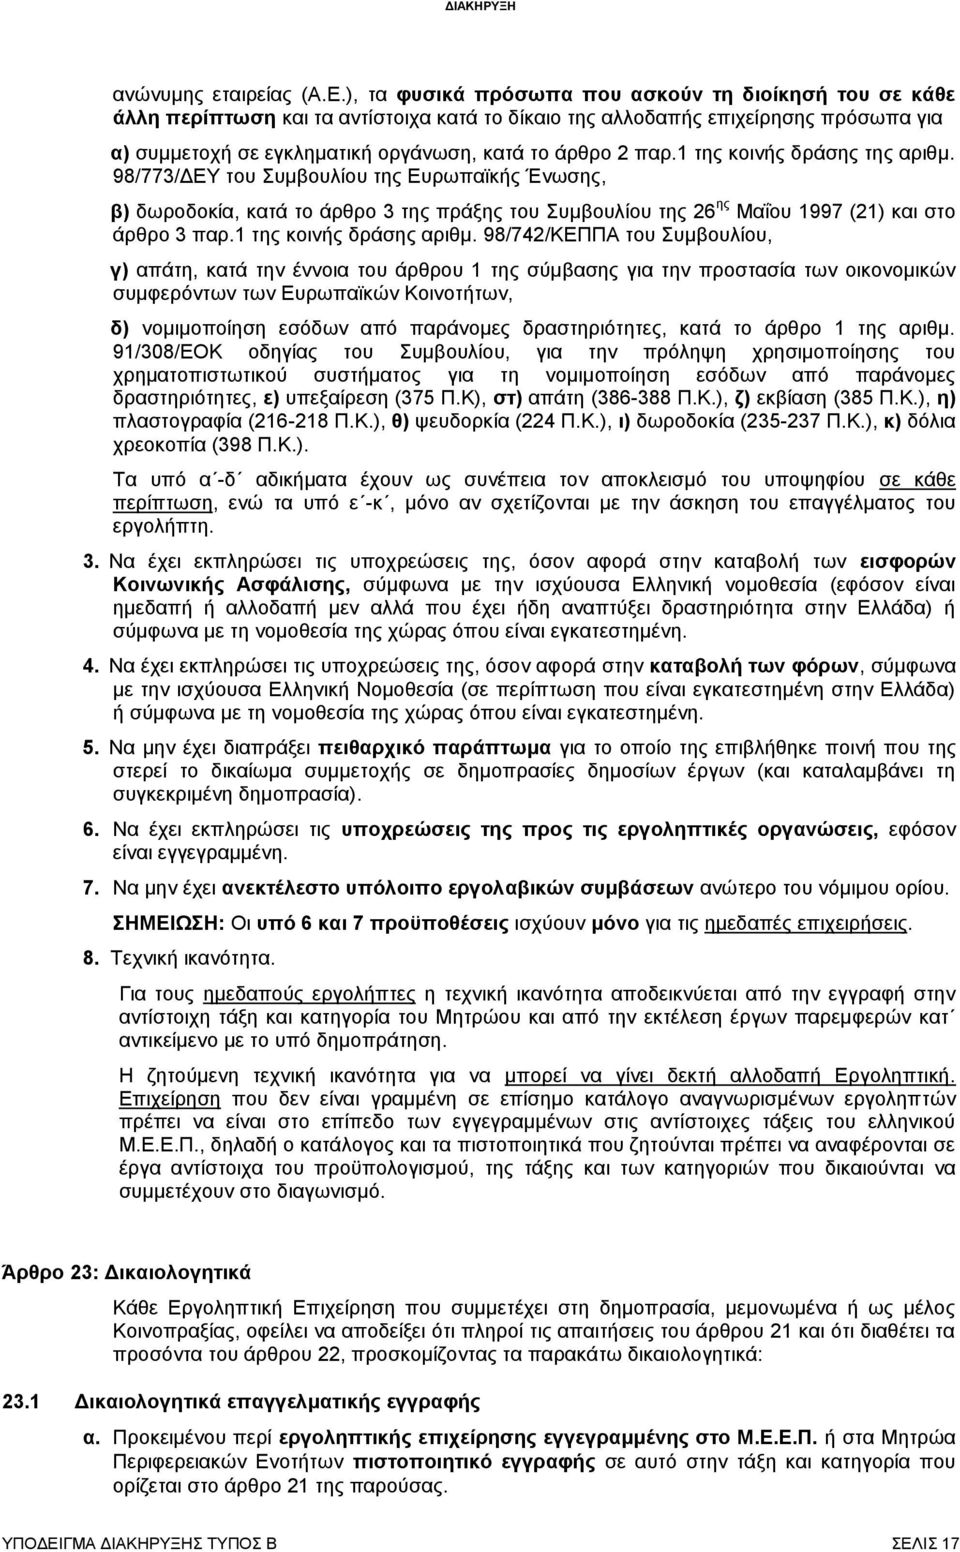 1 της κοινής δράσης της αριθμ. 98/773/ΔΕΥ του Συμβουλίου της Ευρωπαϊκής Ένωσης, β) δωροδοκία, κατά το άρθρο 3 της πράξης του Συμβουλίου της 26 ης Μαΐου 1997 (21) και στο άρθρο 3 παρ.